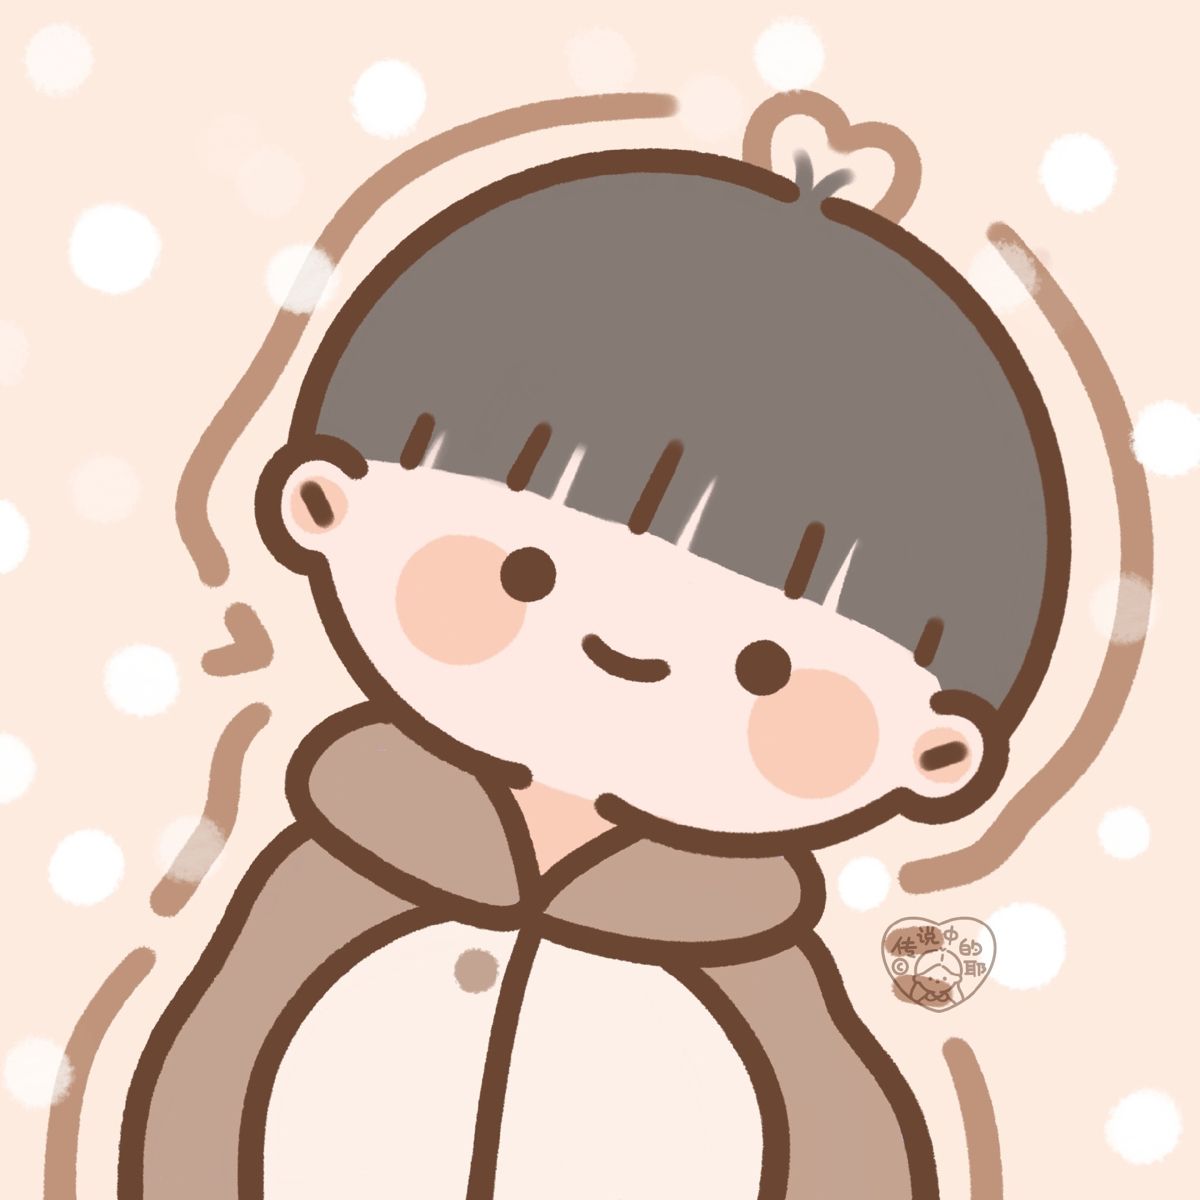 Top 5 avatar cute nam Lạnh Lùng  Boy Ngầu  Anime  Chibi